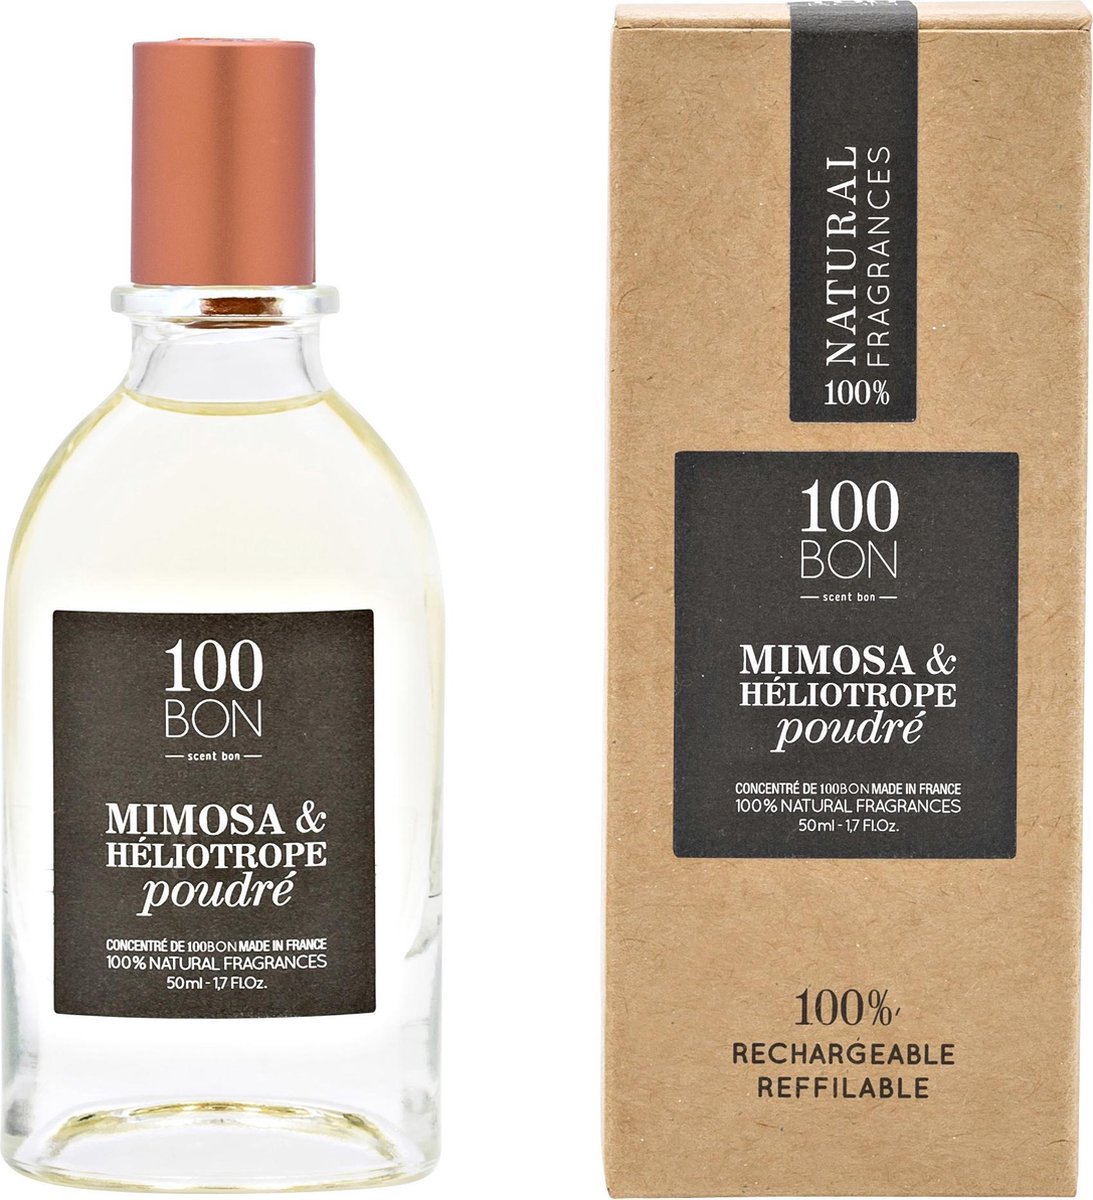 100BON EDP Mimosa & Heliotrope Poudre - 50ml